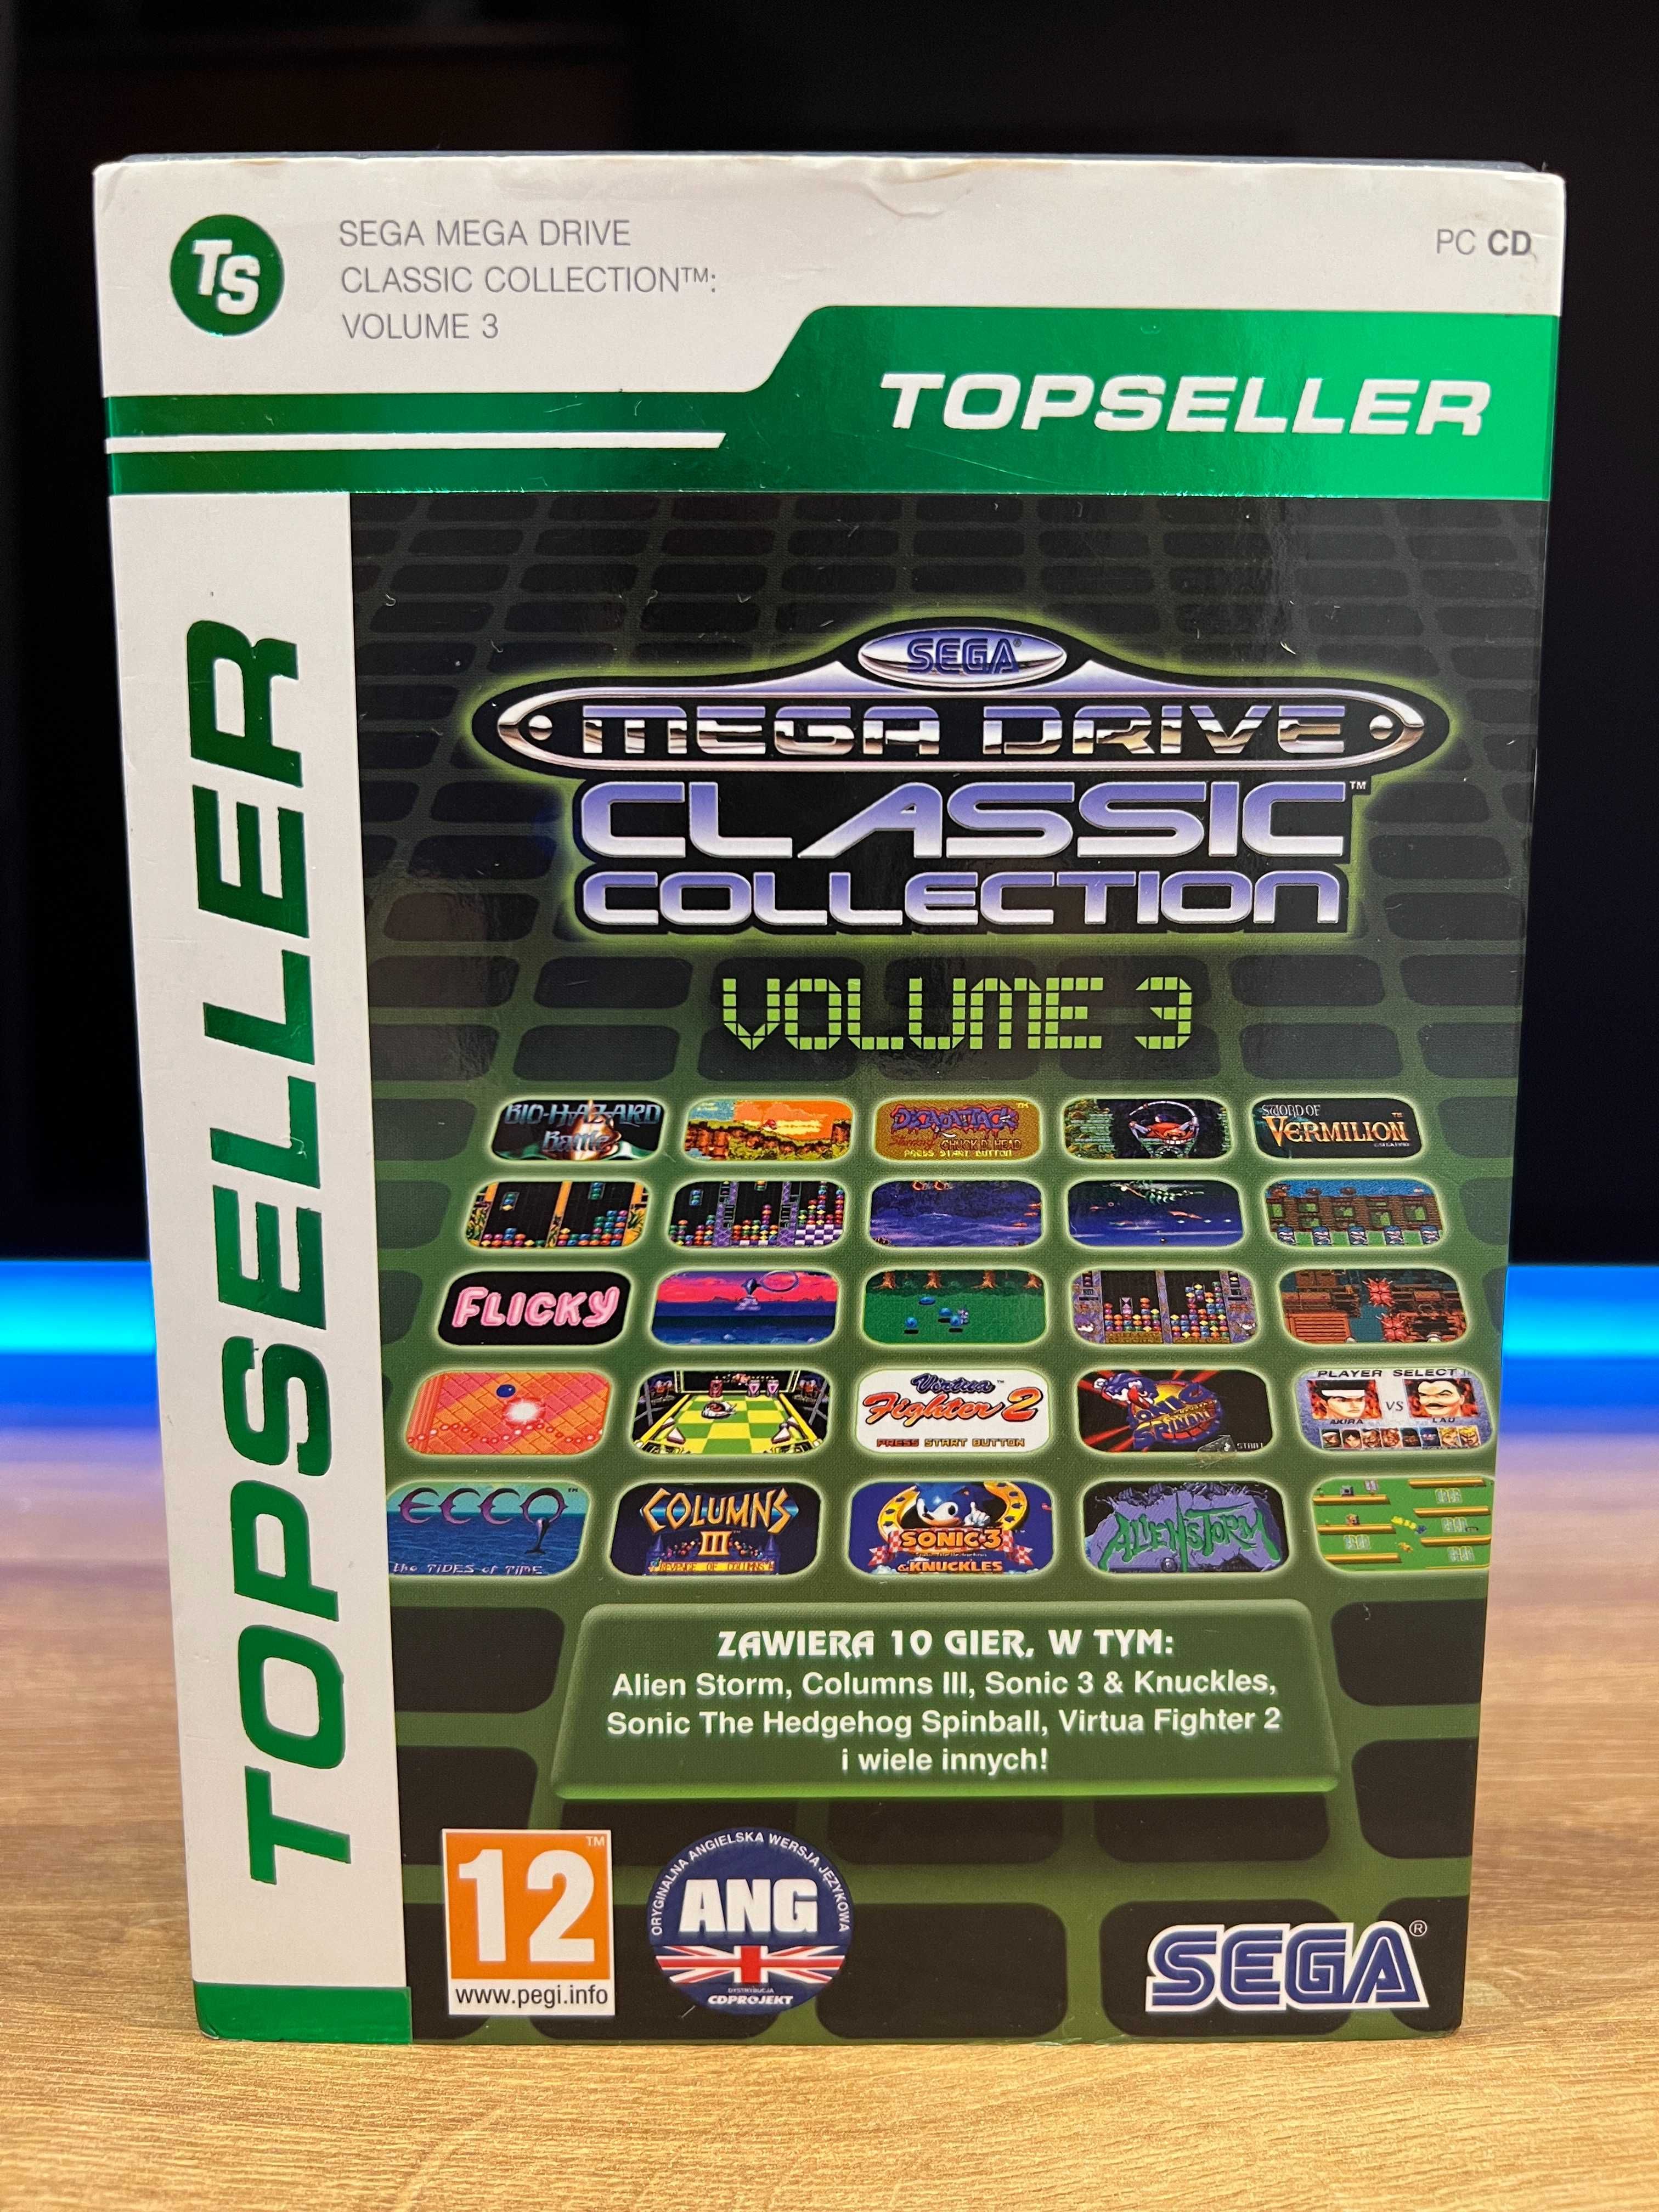 Sega Mega Drive Classic Collection Volume 3 (PC PL) DVD BOX TOPSELLER